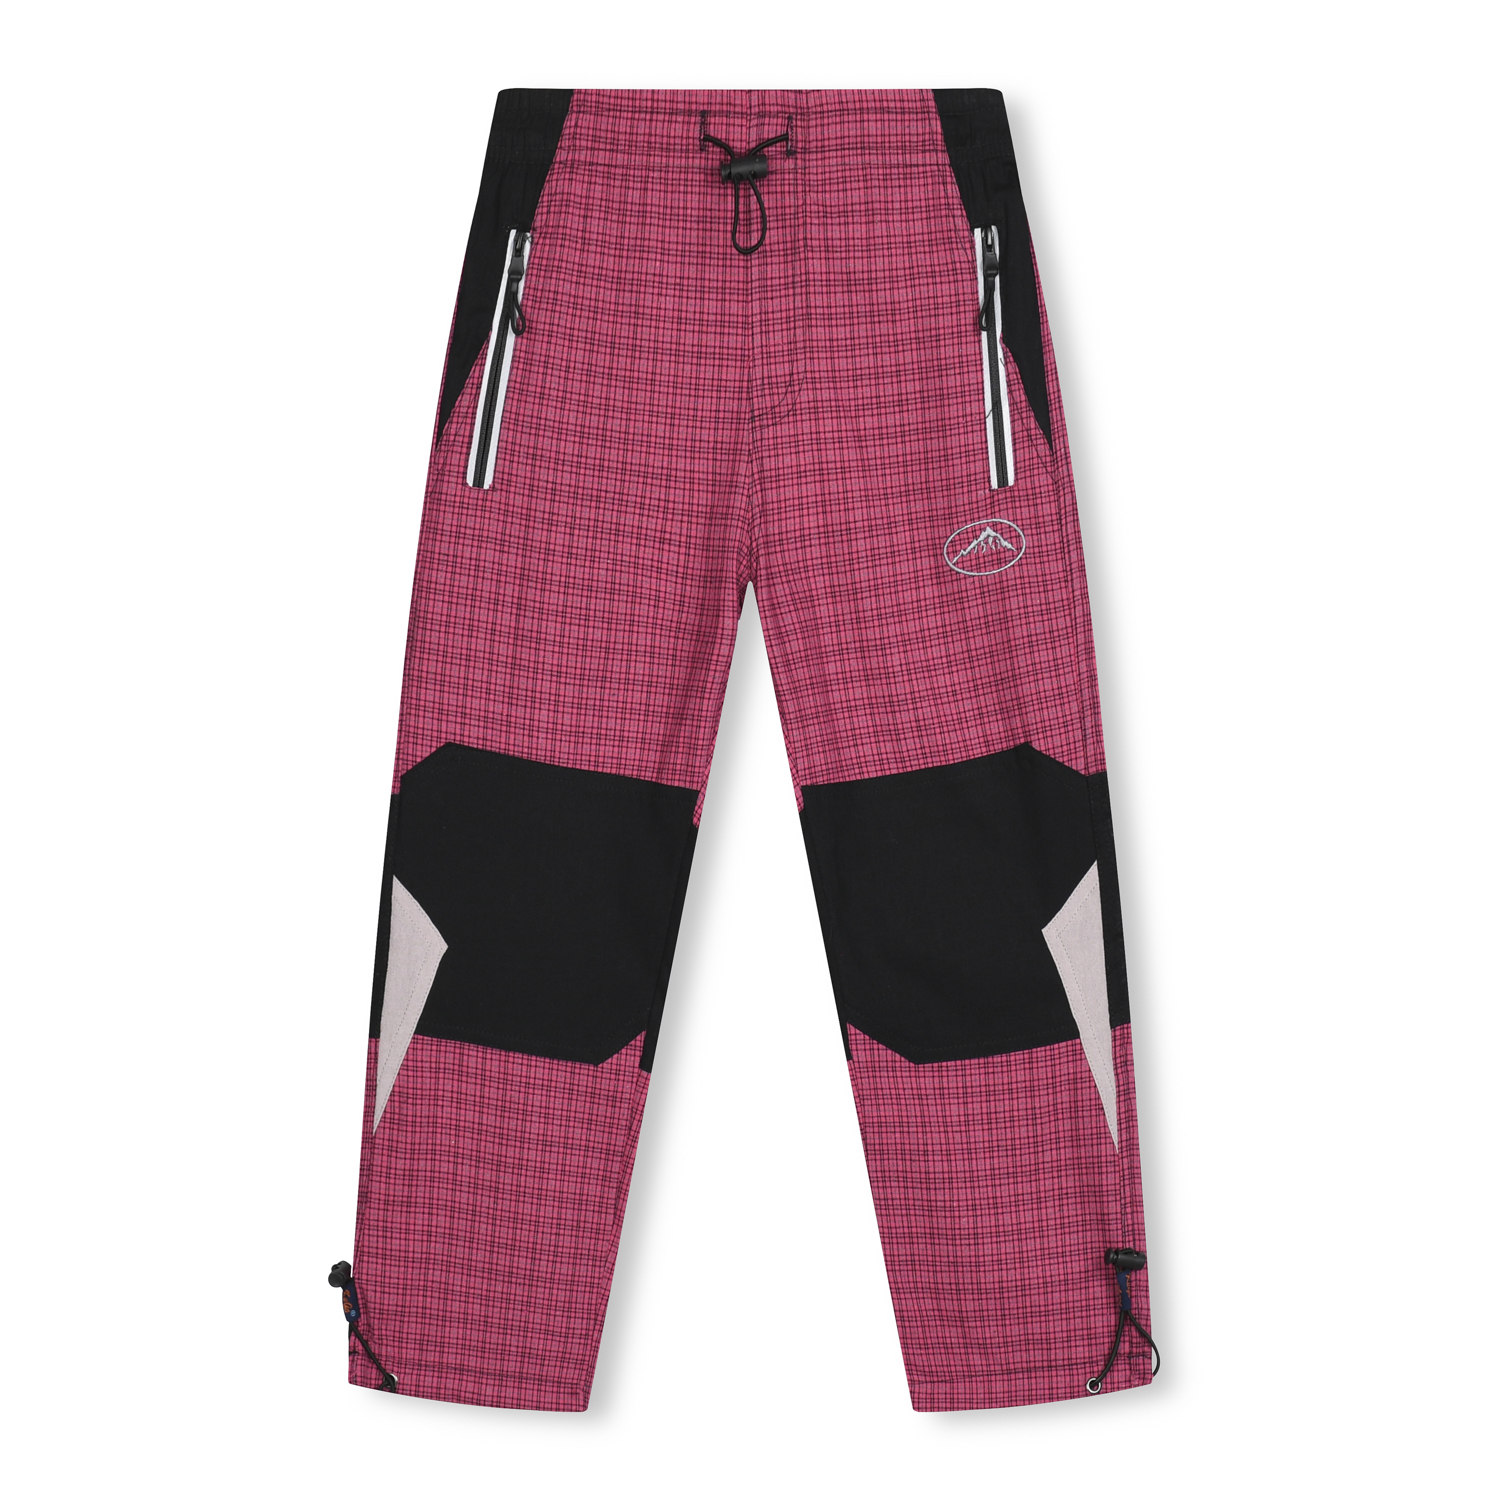 Dívčí plátěné kalhoty - KUGO FK7602, růžová Barva: Růžová, Velikost: 98